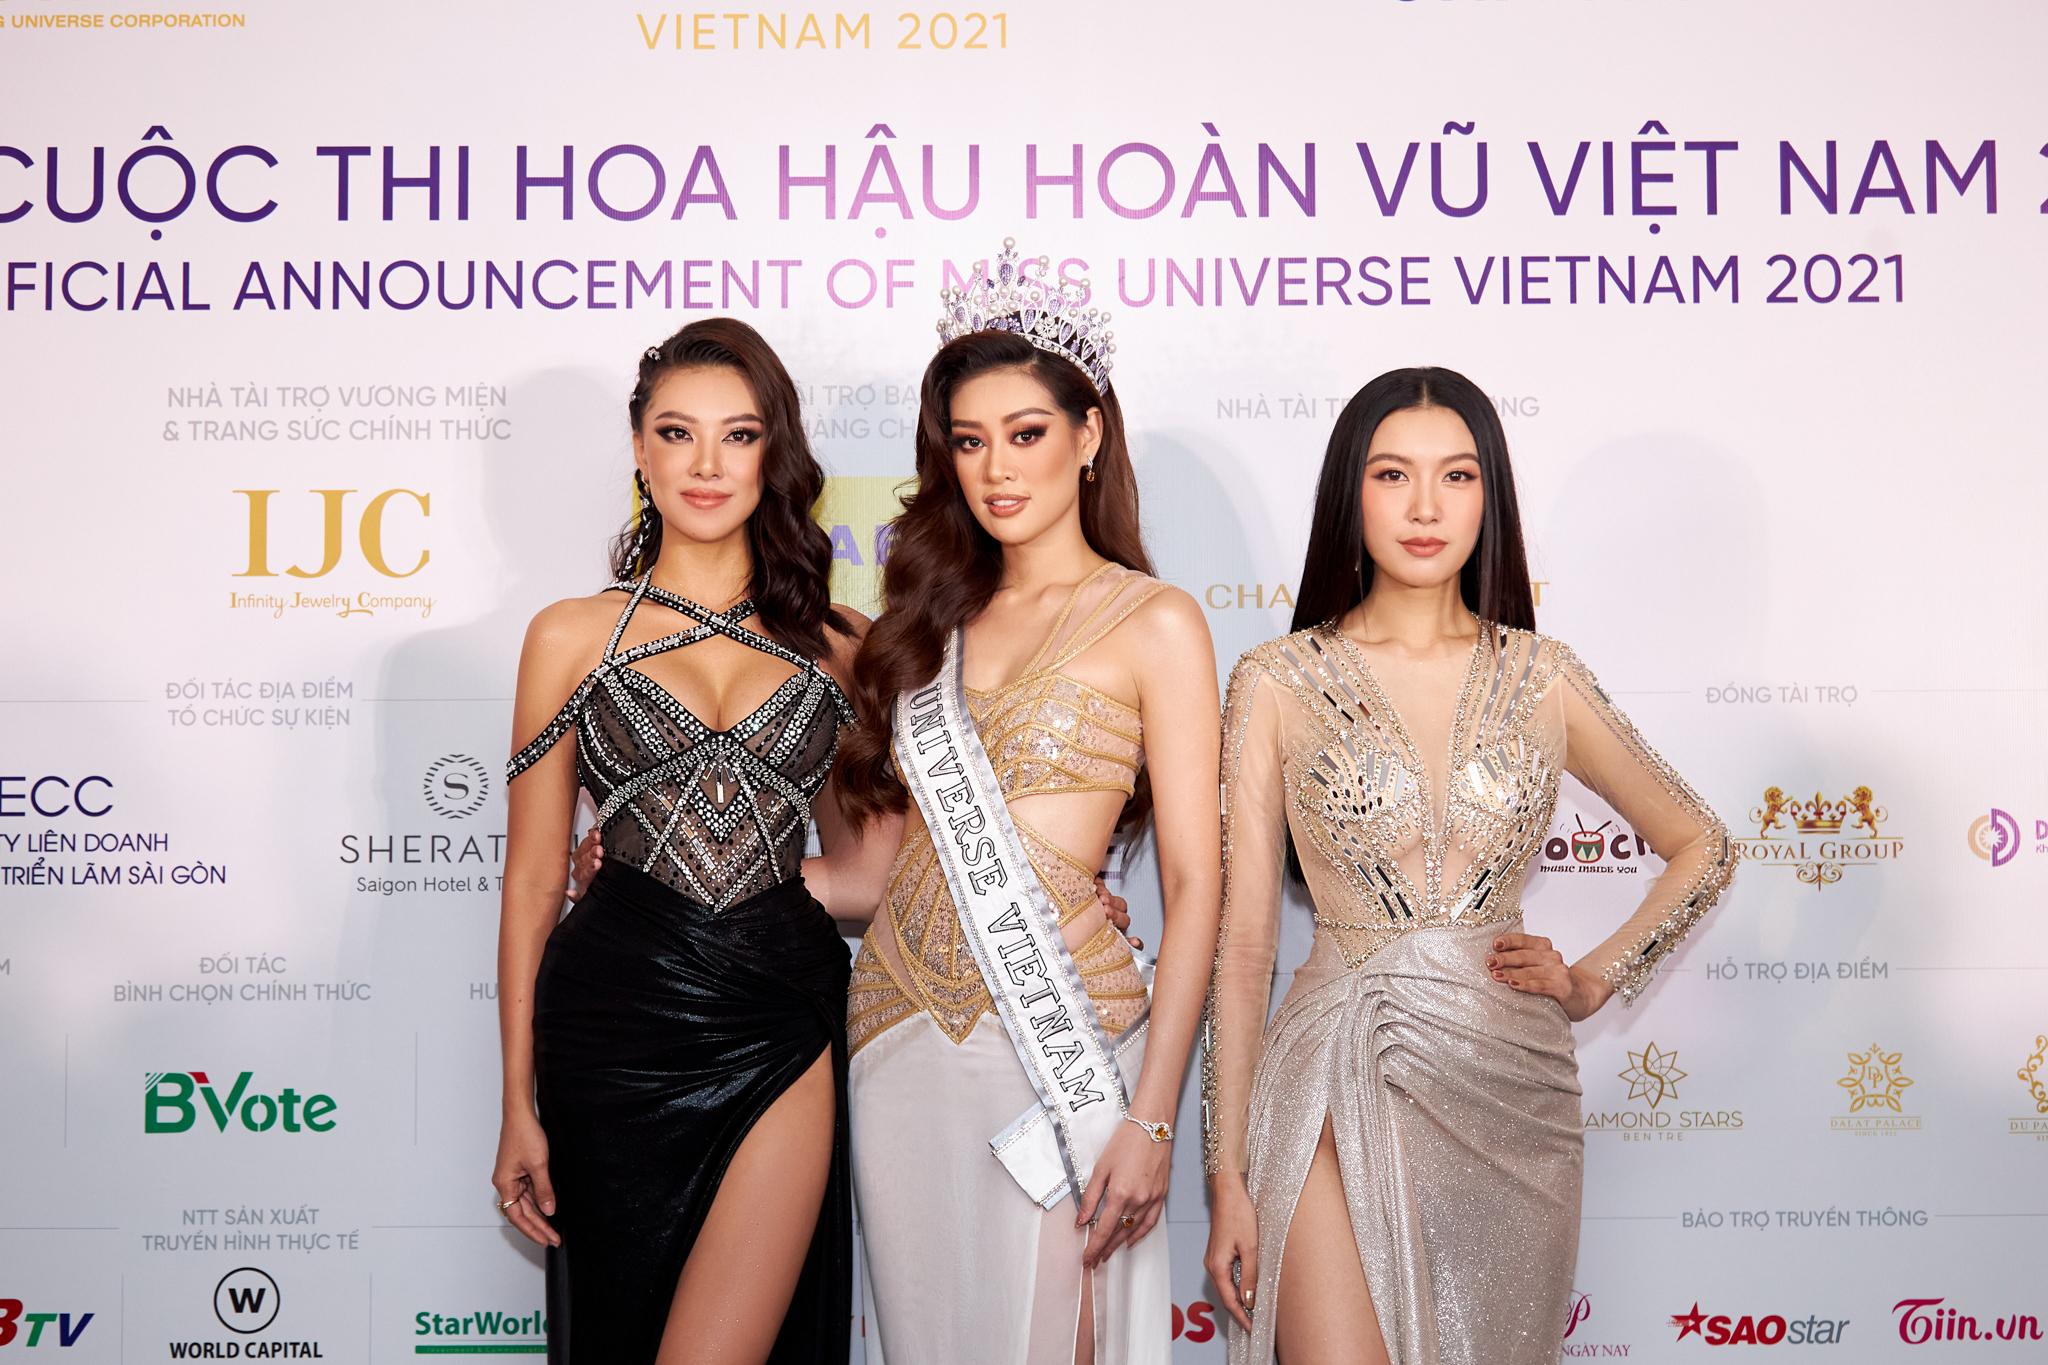 Hoa hậu hoàn vũ Việt Nam 2021 chính thức khởi động với nhiều điểm mới